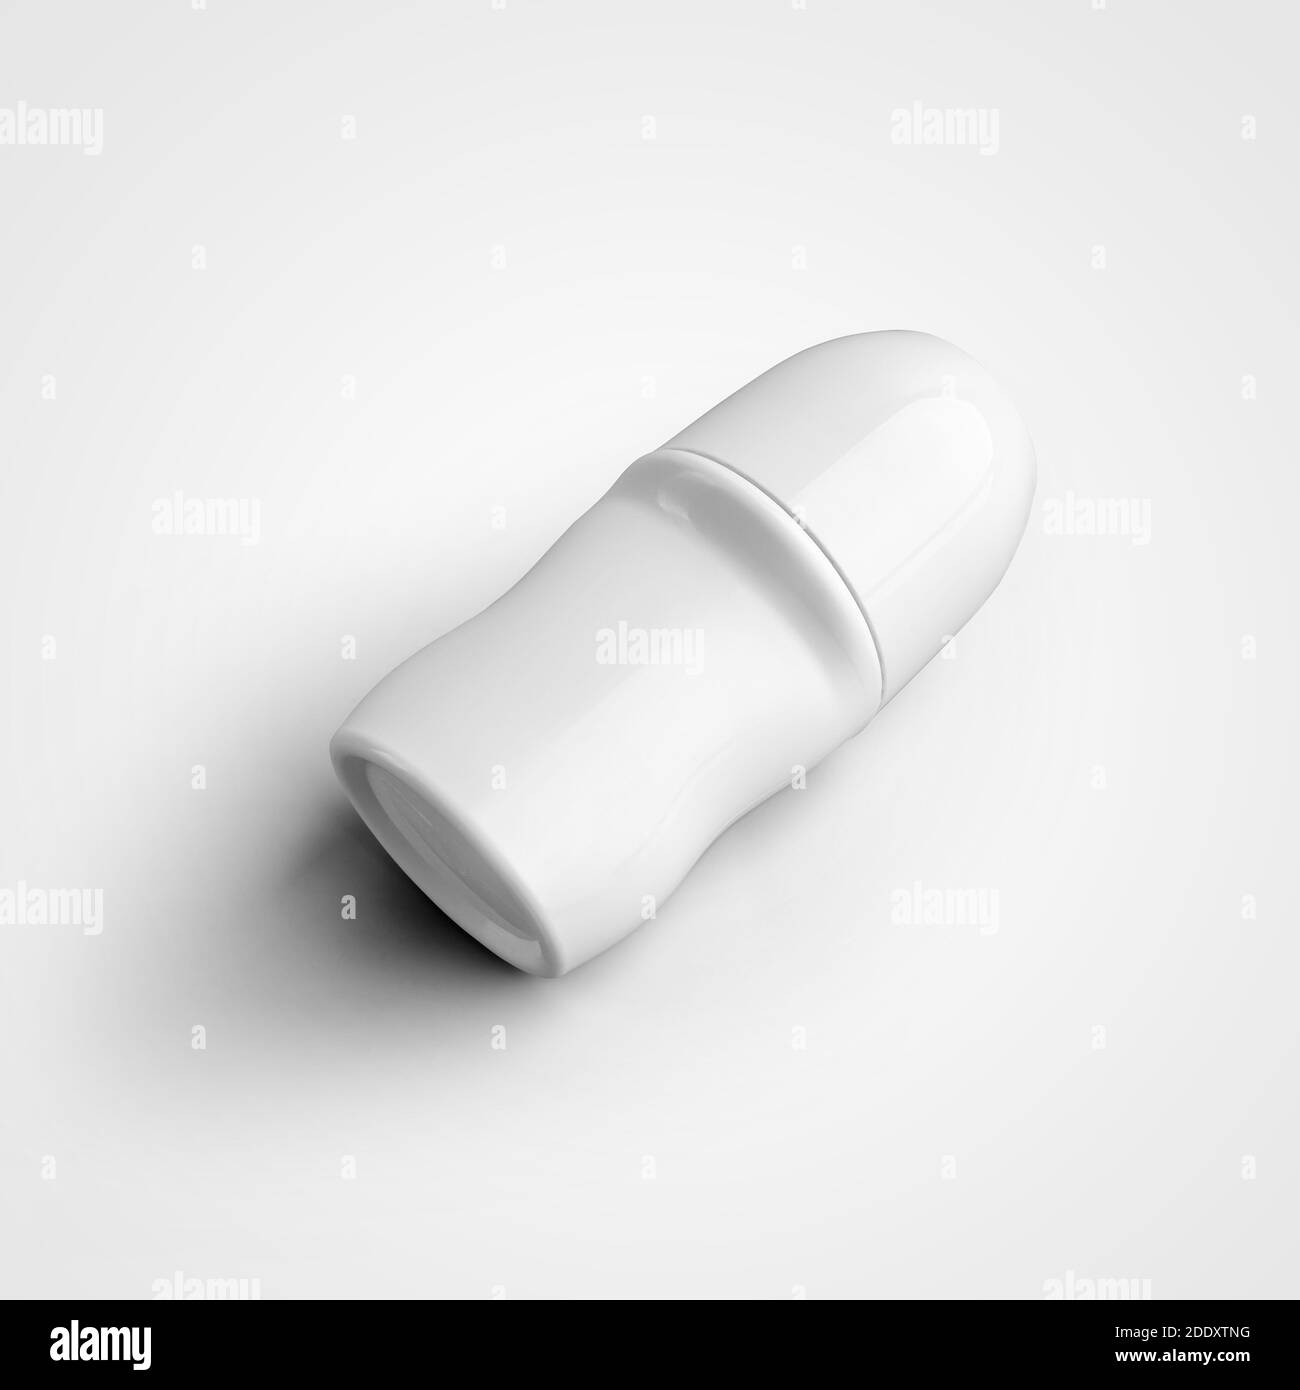 Modello di vasetto di plastica bianca di deodirante a rullo, prodotto per l'igiene personale ascella, isolato su sfondo. Confezione antitraspirante priva di etichette Foto Stock